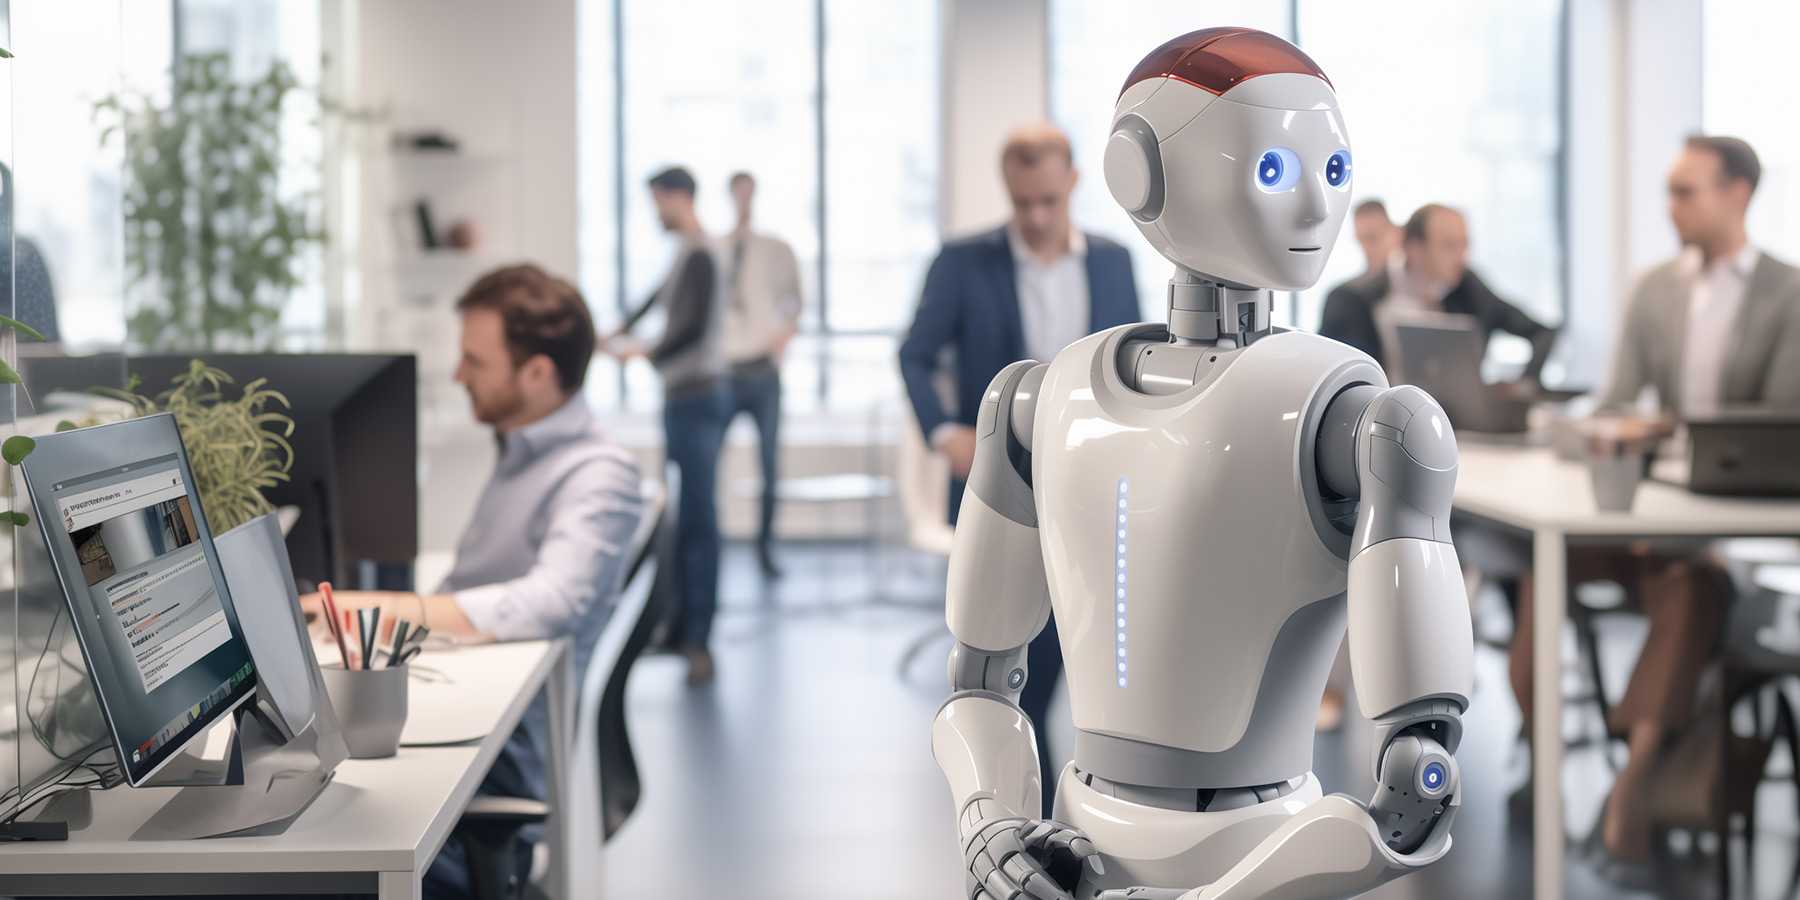 L'intelligence artificielle - sur la photo, un robot qui travaille avec des humains - est considérée comme une technologie clé. Les dernières recherches du KOF montrent que l'IA est souvent introduite dans des groupes relativement fermés. (Image créée avec l'IA)